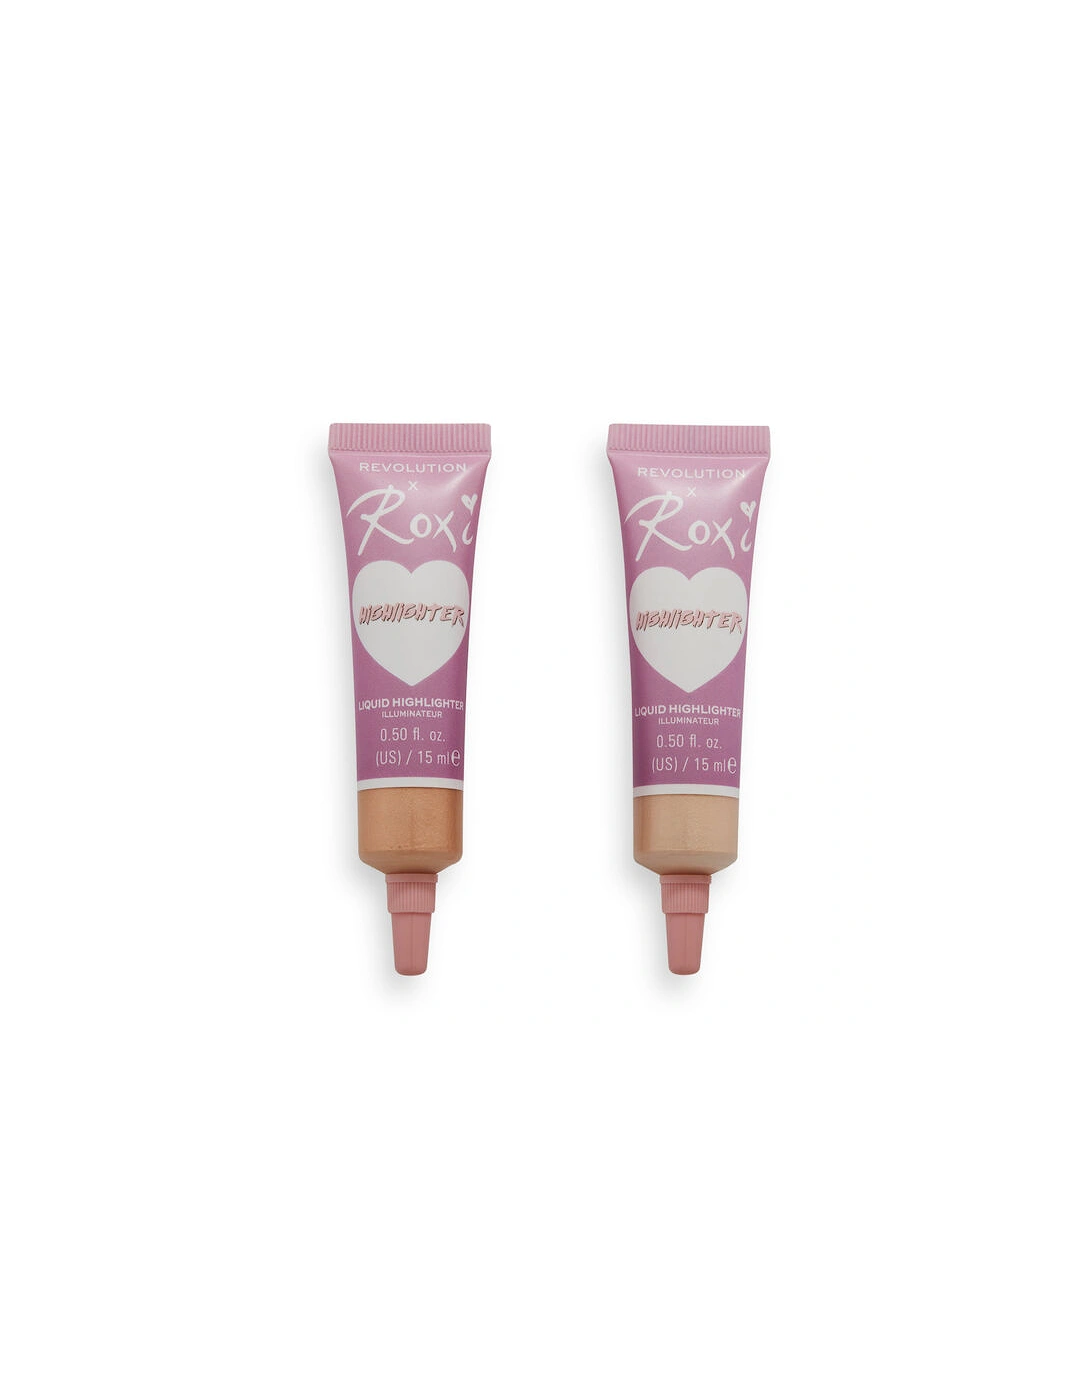 Makeup X Roxi Cherry Blossom Liquid Highlighter Duo, 2 of 1